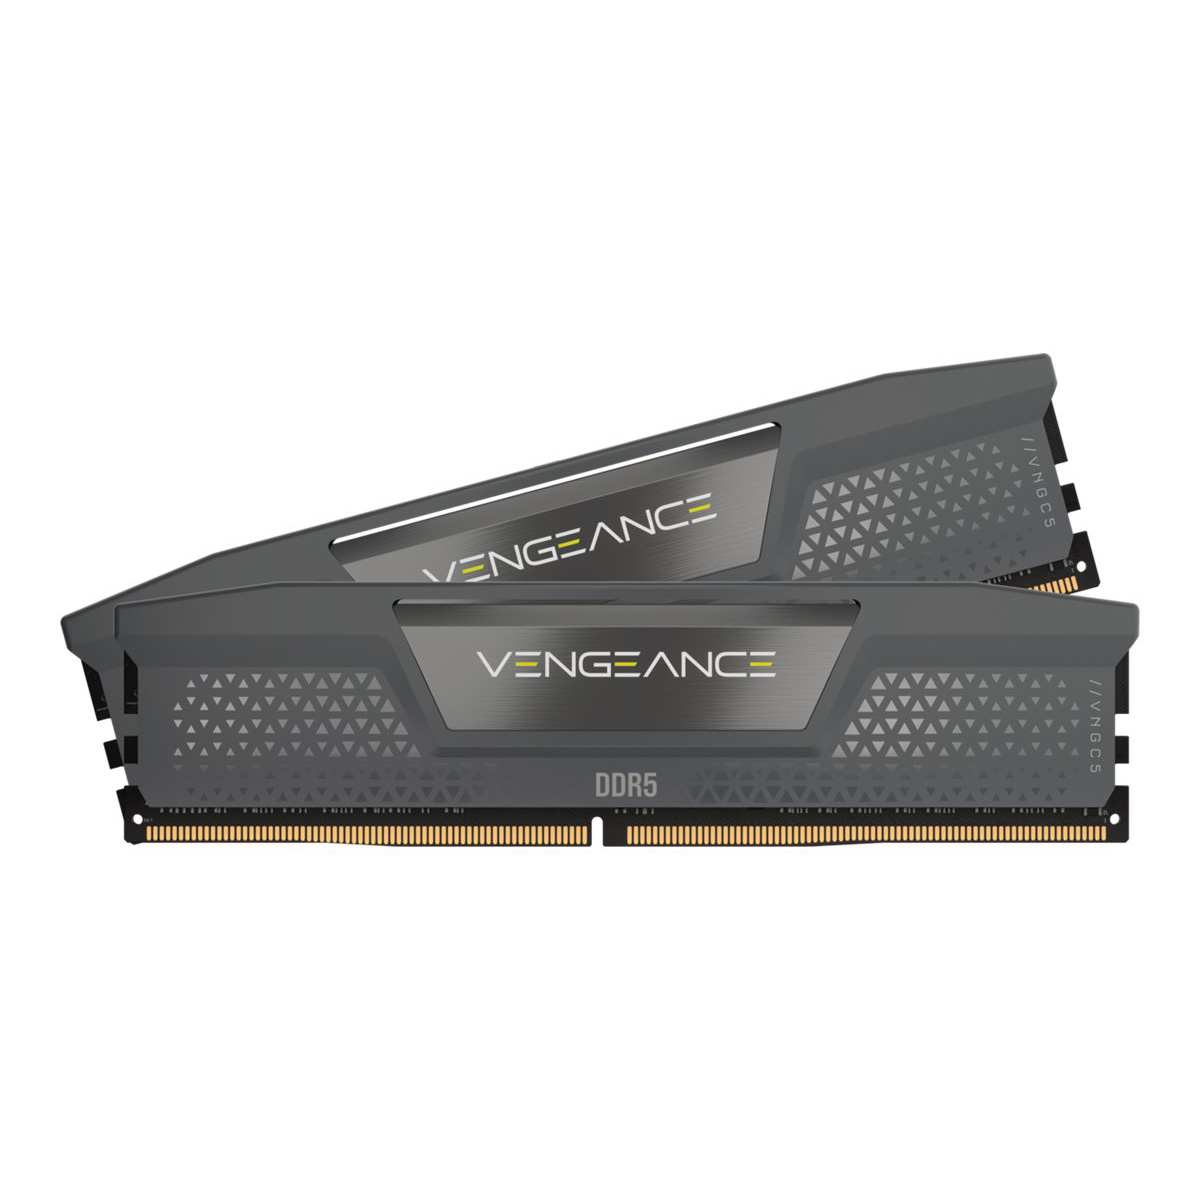 36-36-36-76,, RGB, DDR5 Black GB EXPO CORSAIR Speicher-Kit AMD 1.35V, 2x16GB, 32